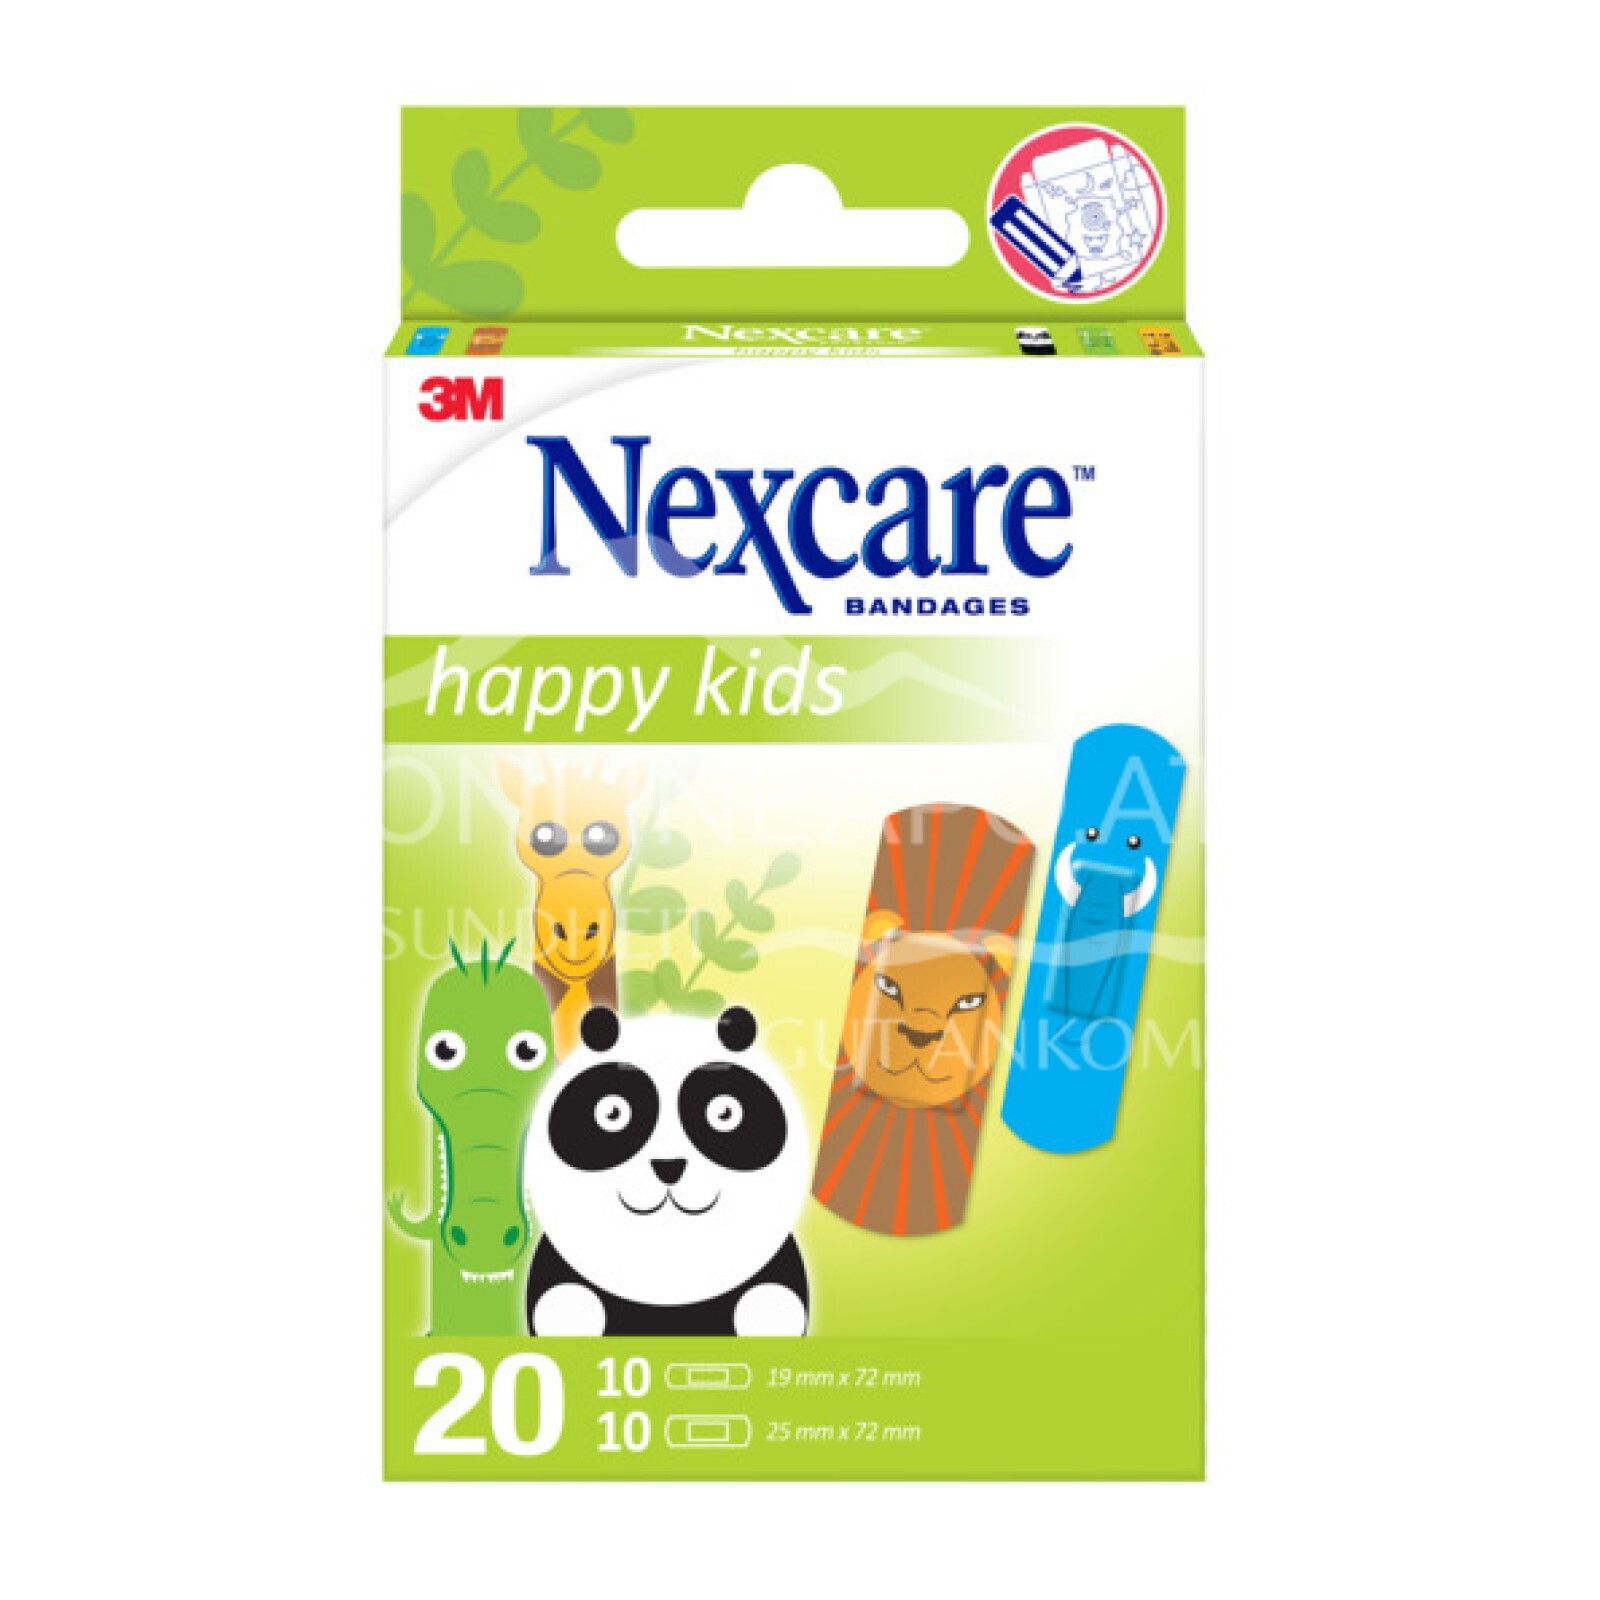 3M Nexcare™ Kinderpflaster Happy Kids Animals, 2 Größen assortiert